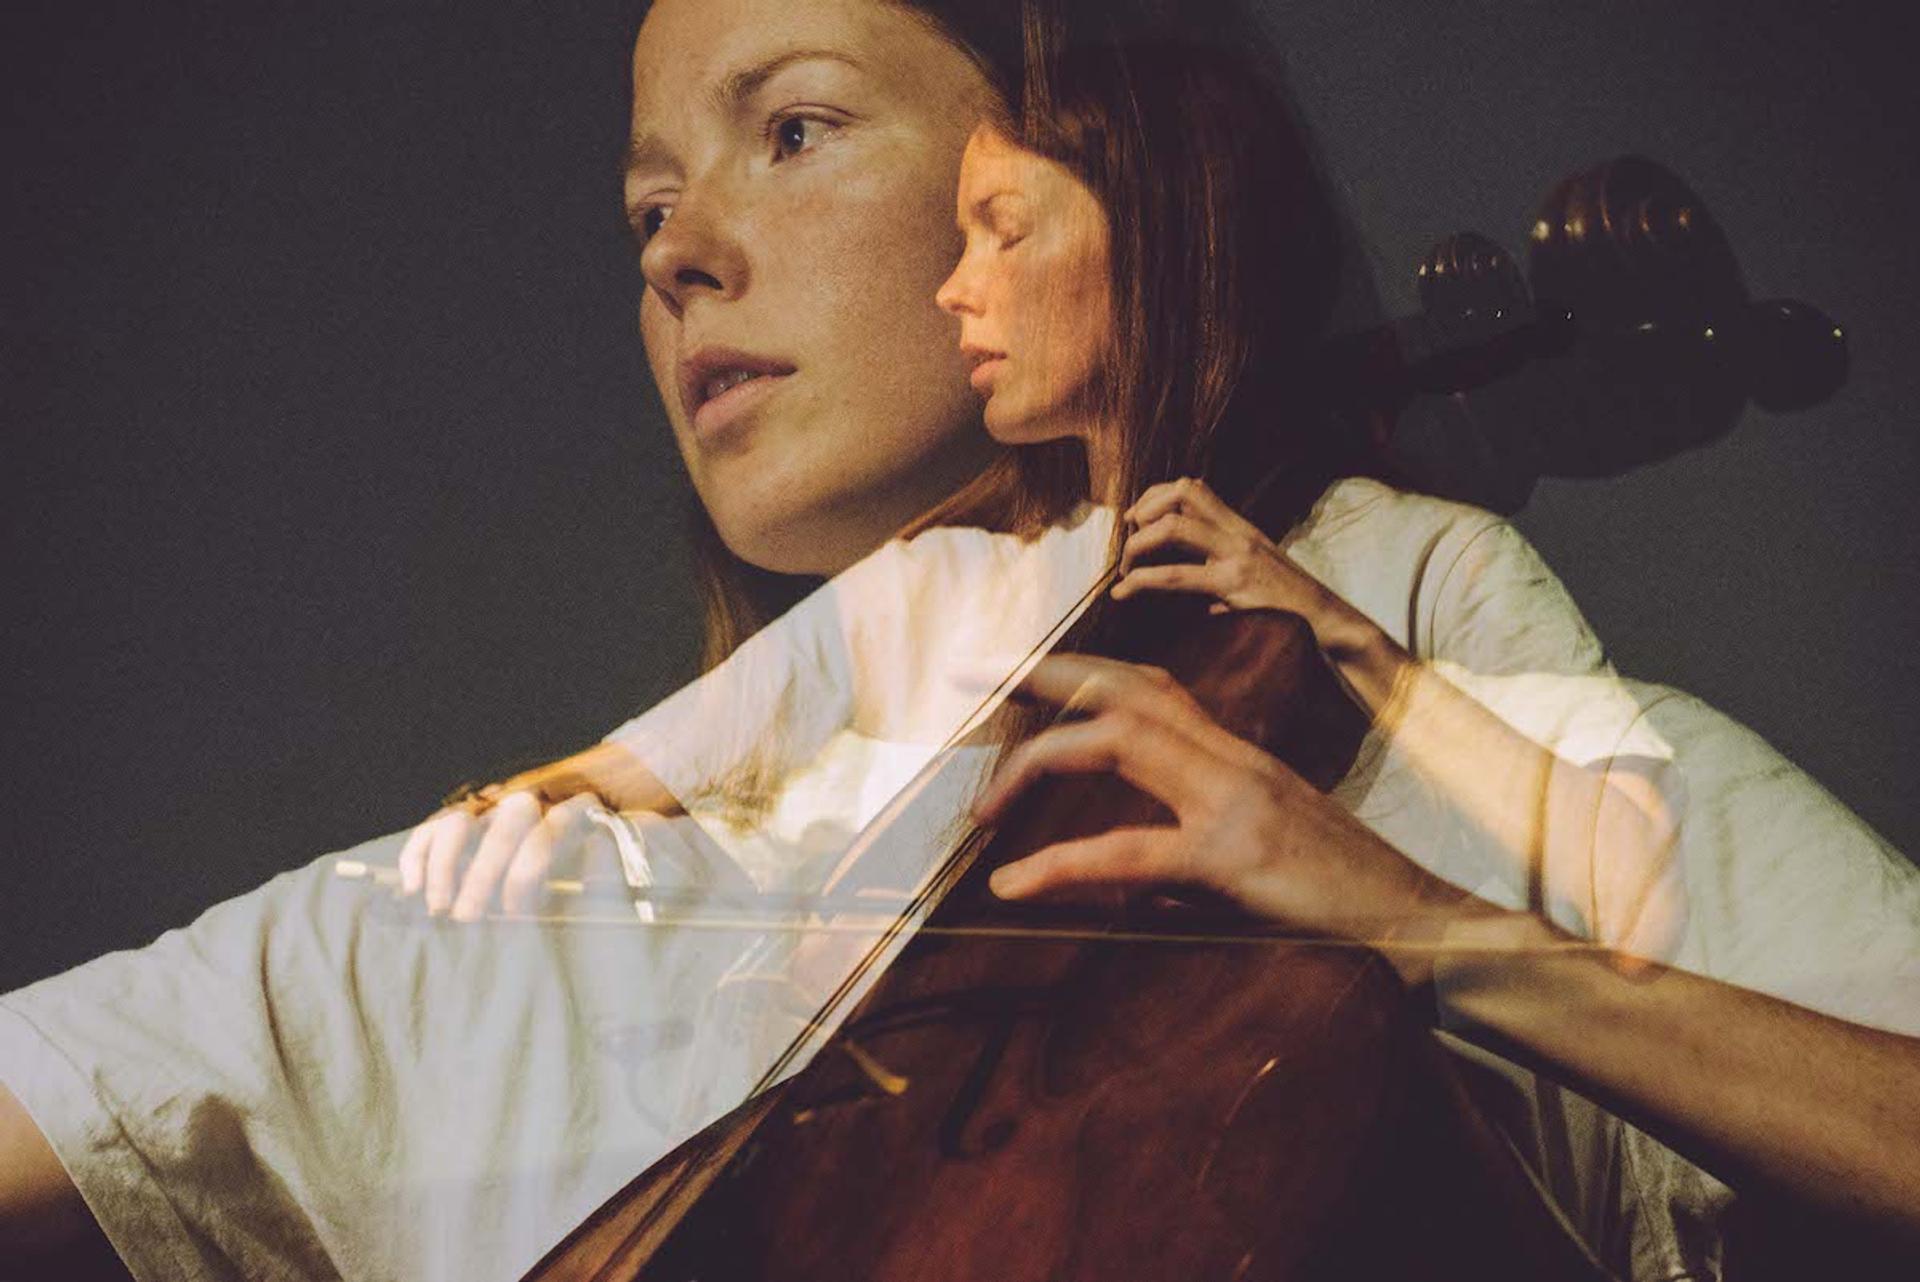 Lucy Railton plays the cello